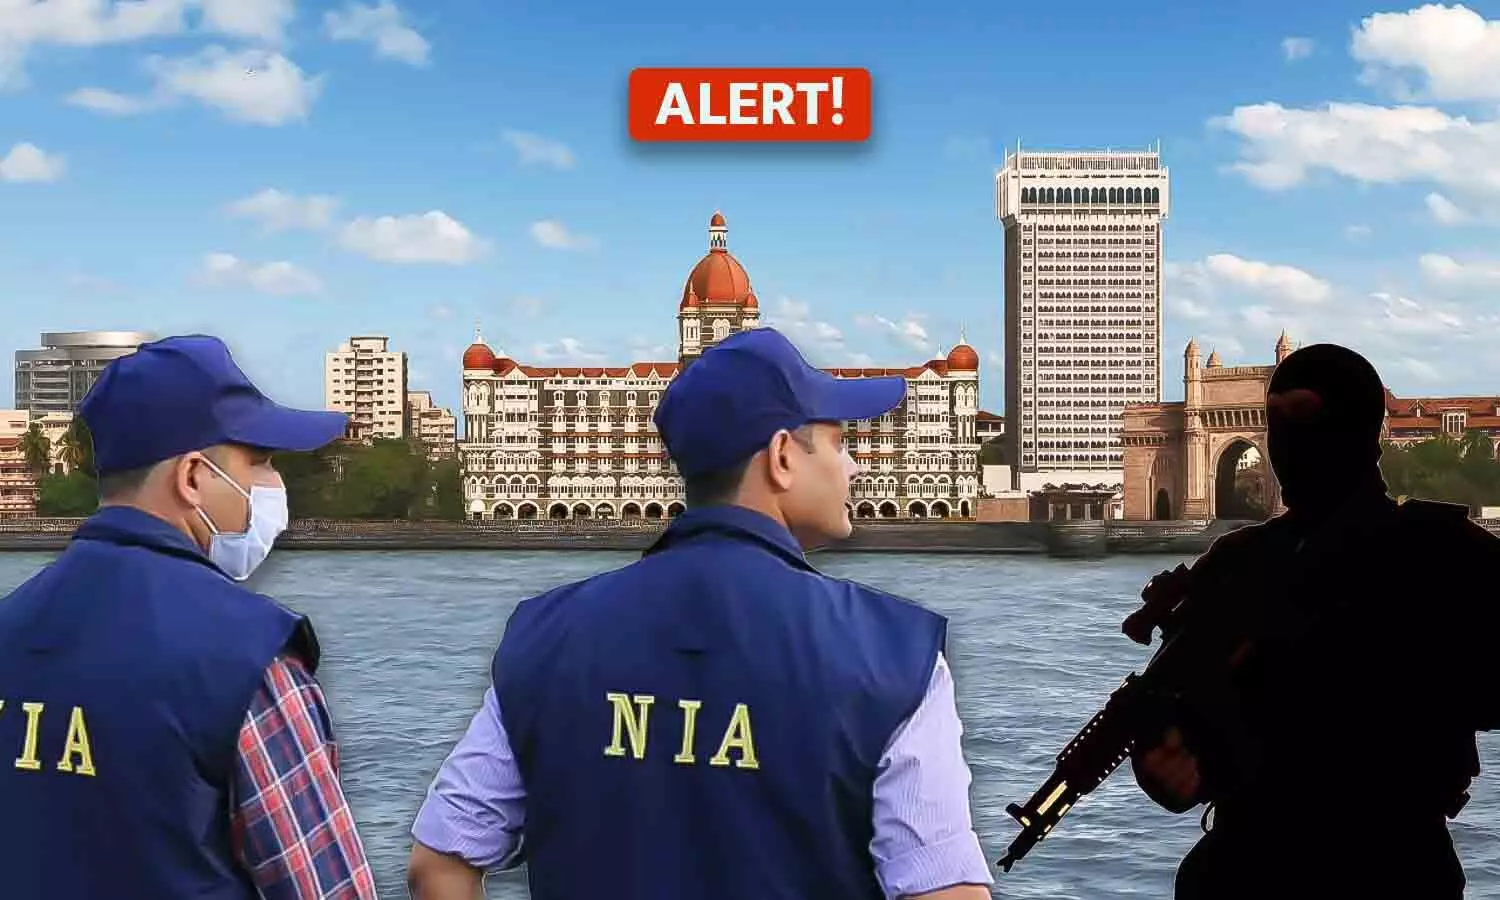 इंदौर के सरफराज मेमन से देश को खतरा: मुंबई में घूम रहा खतरनाक और संदिग्ध शख्स, NIA का अलर्ट जारी